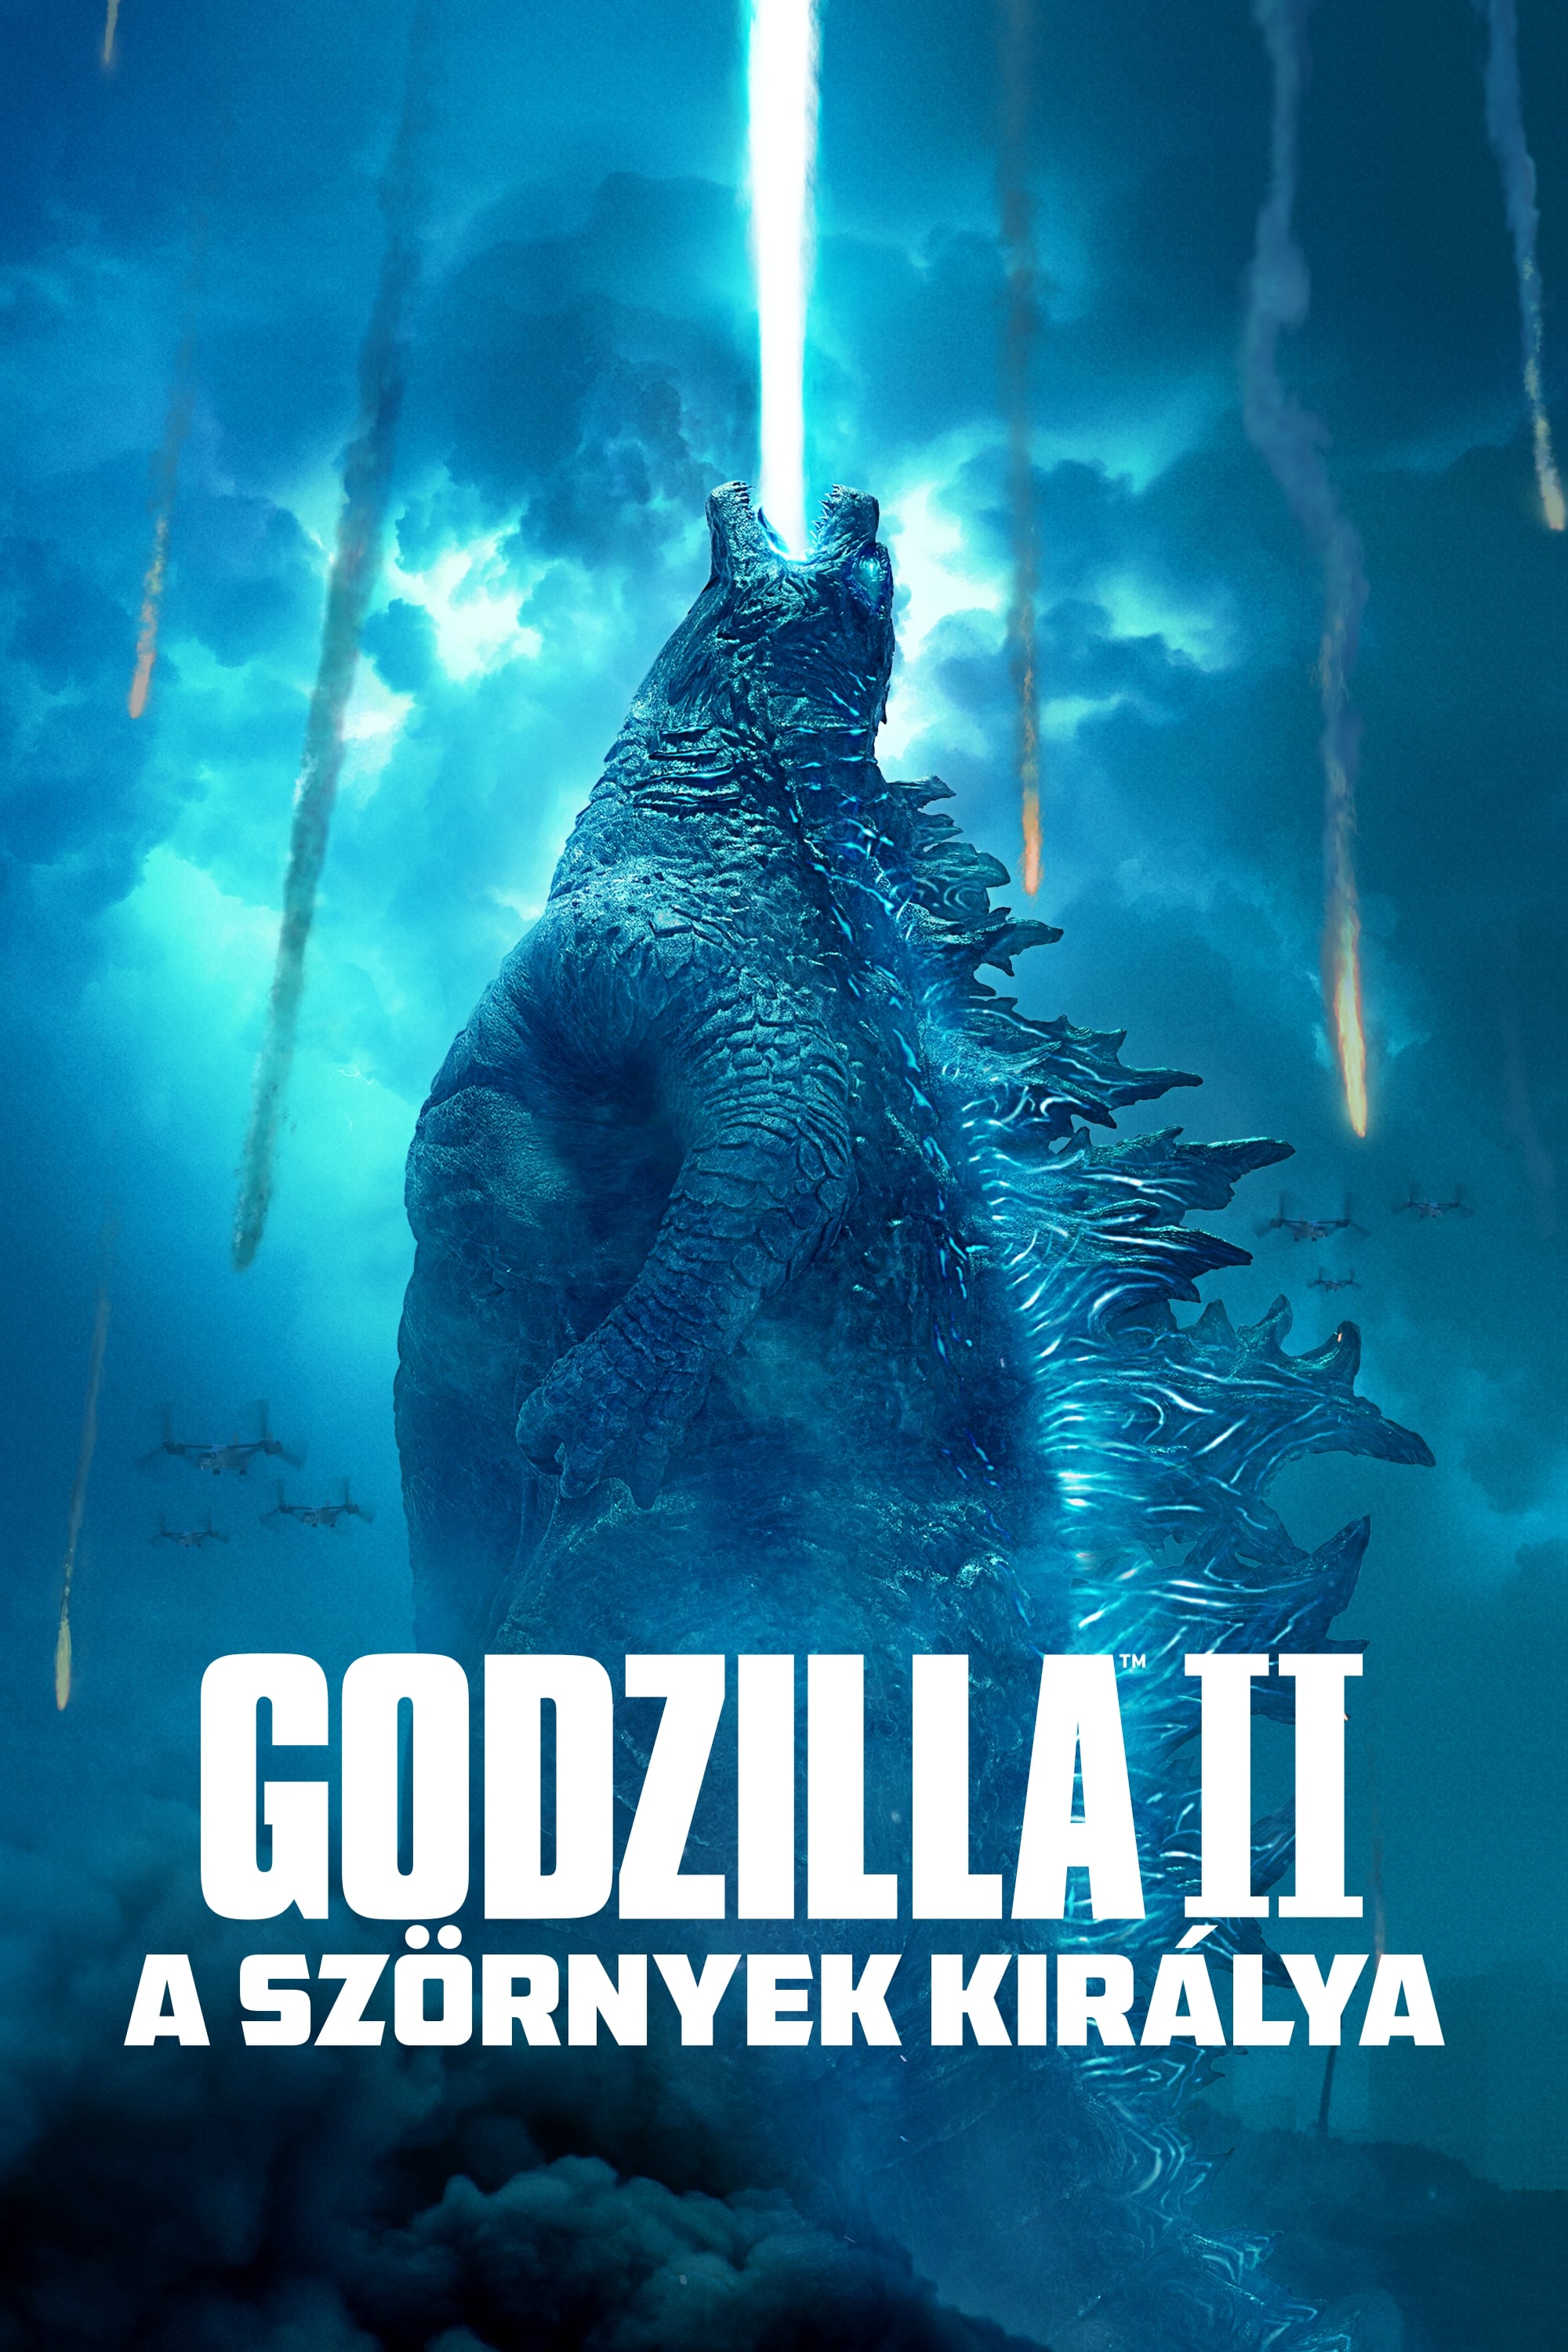 Godzilla: A szörnyek királya TELJES FILM MAGYARUL